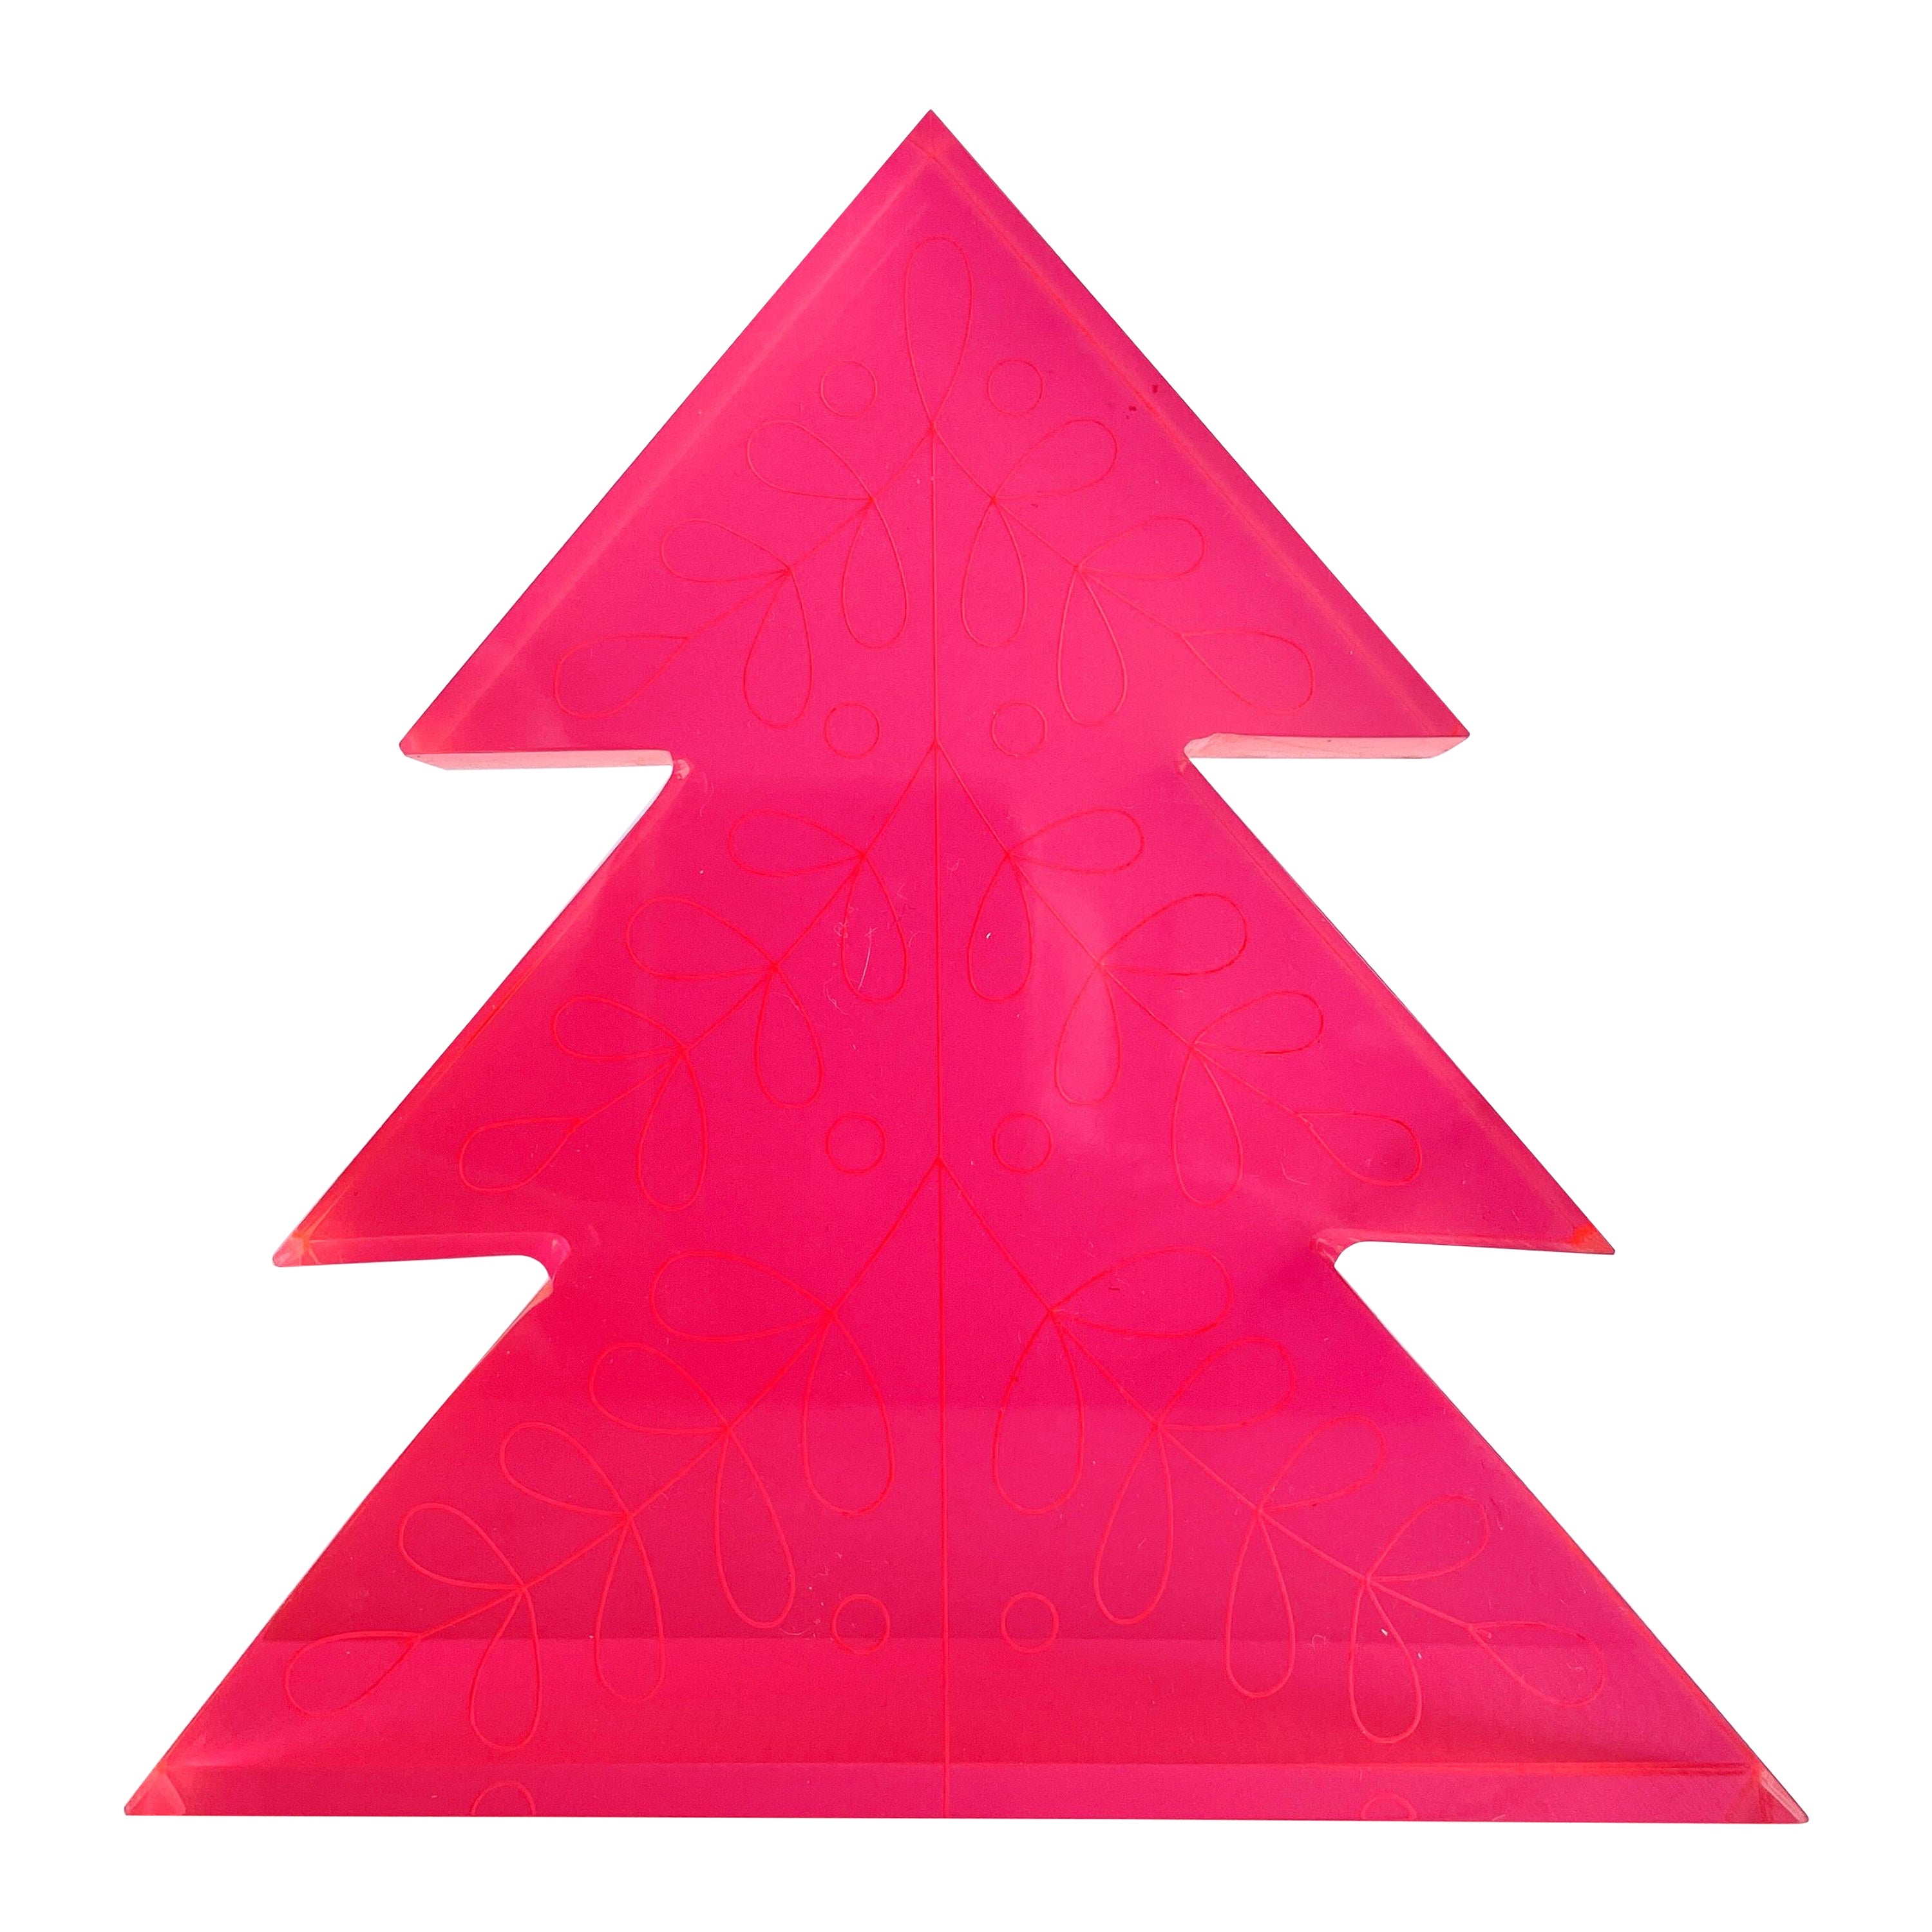 Décoration d'arbre de Noël en acrylique rose fluo par Paola Valle